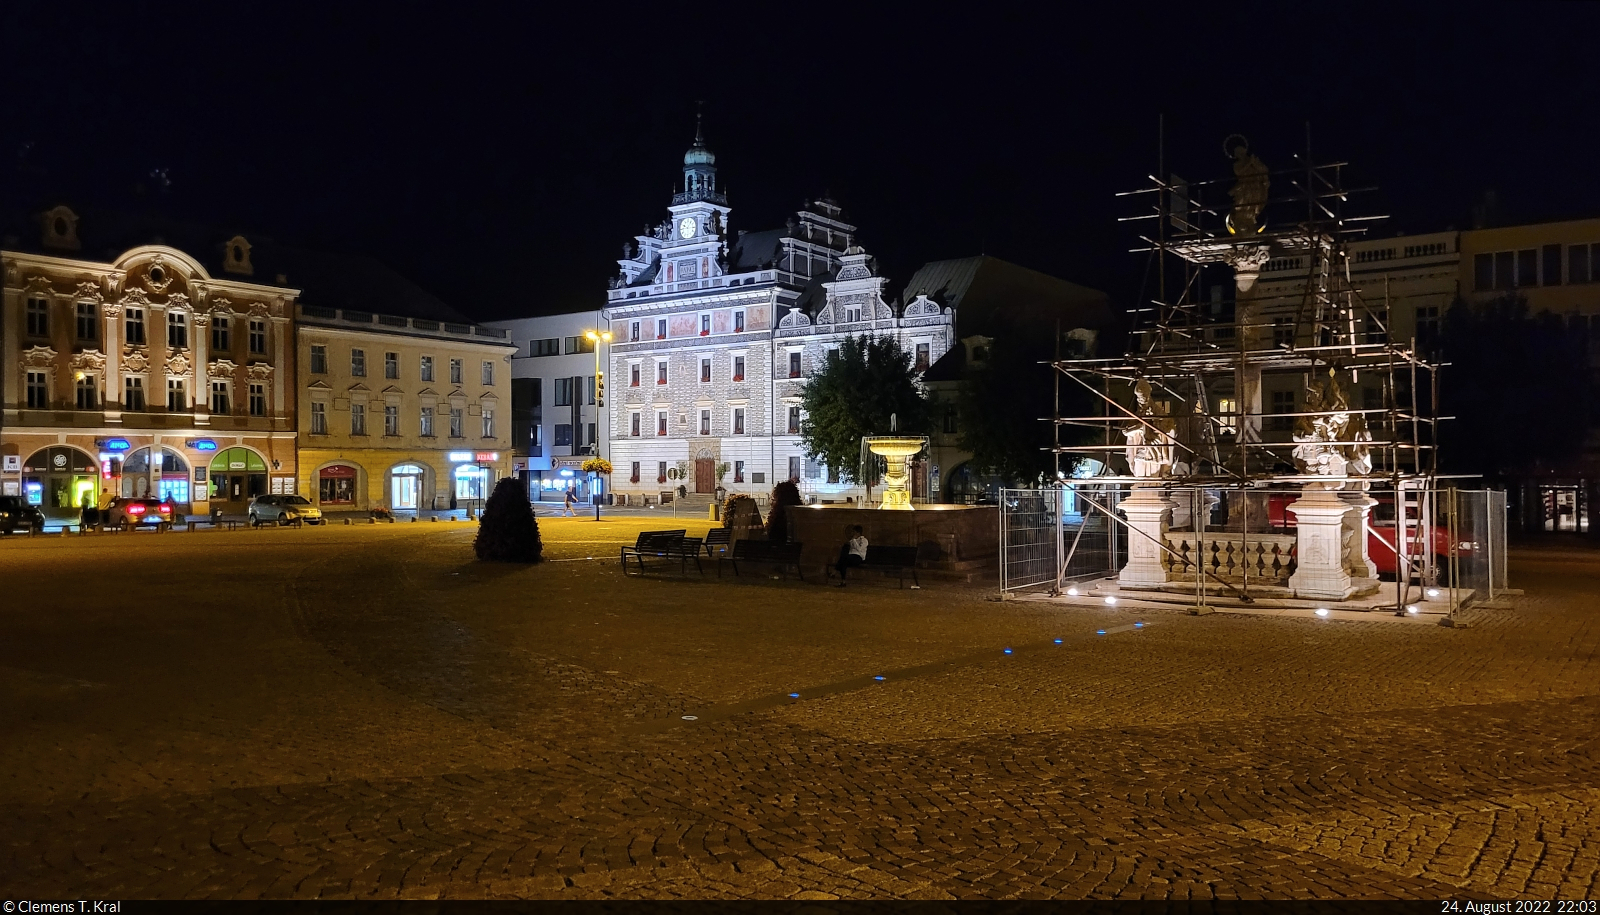 Koln (CZ):
Marktplatz zu spter Stunde mit dem hell erleuchteten restaurierten Rathaus.

🕓 24.8.2022 | 22:03 Uhr